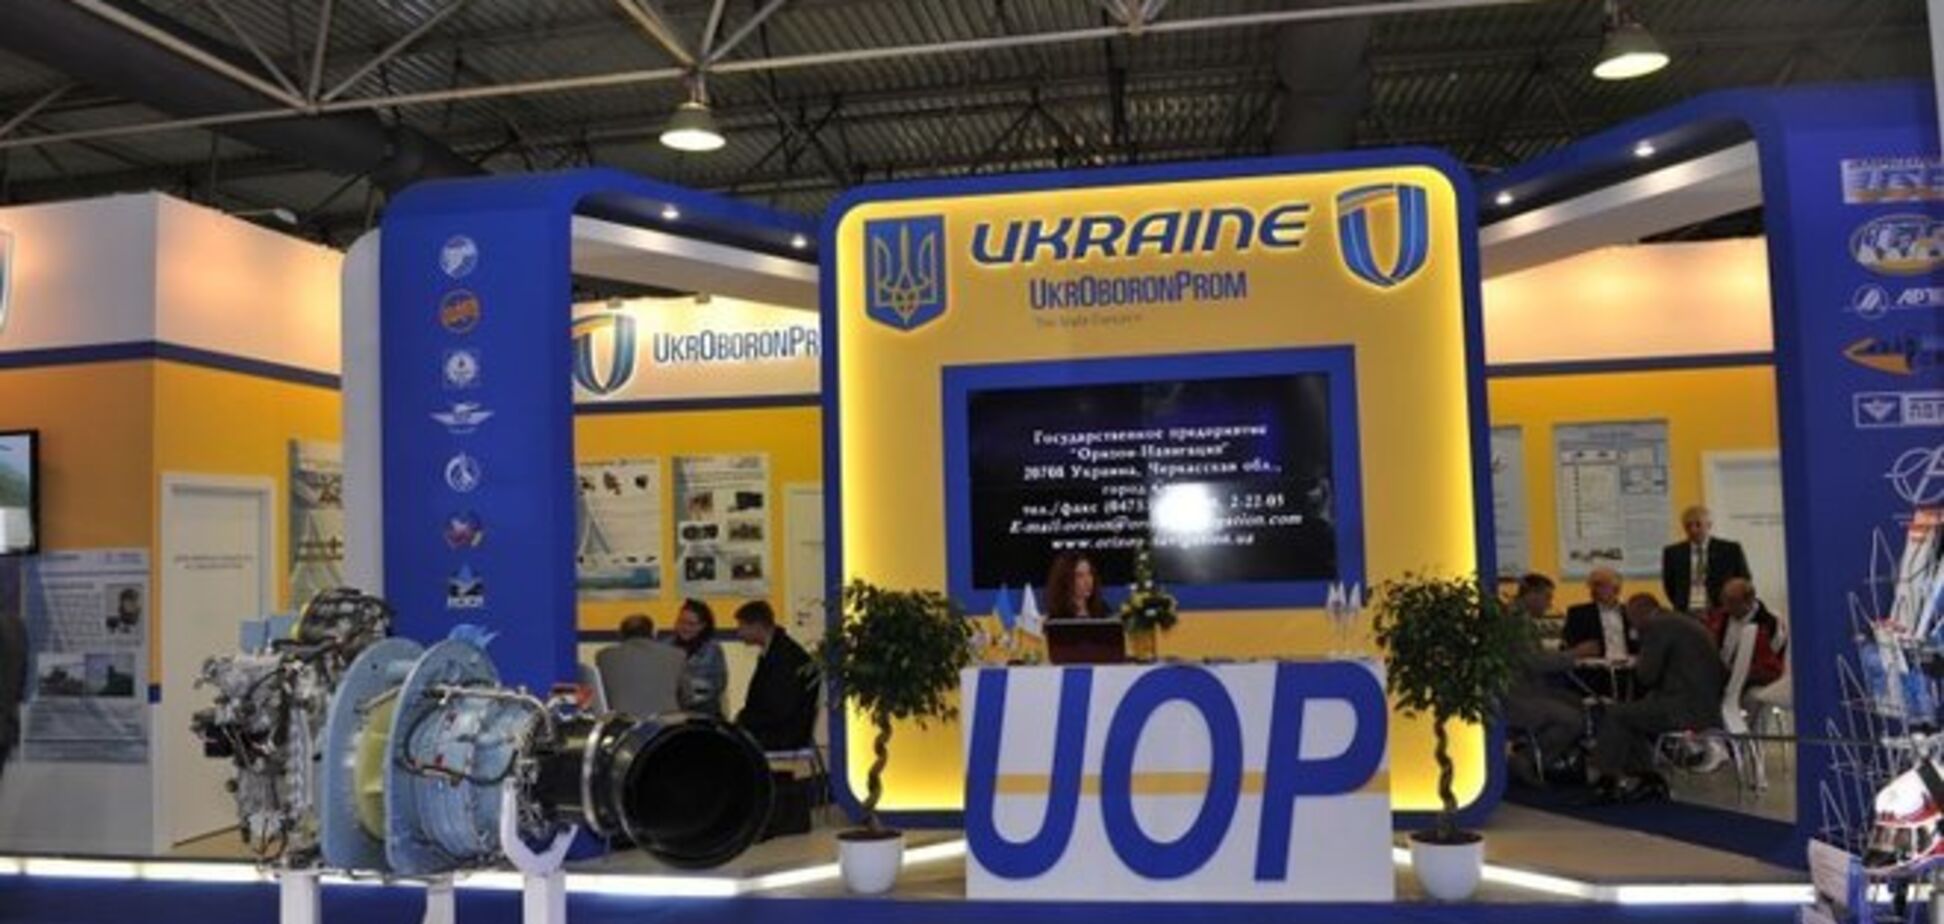 Пока украинские герои сражаются в зоне АТО, 'Укроборонпром' готовит аферу на 8 млн - СМИ